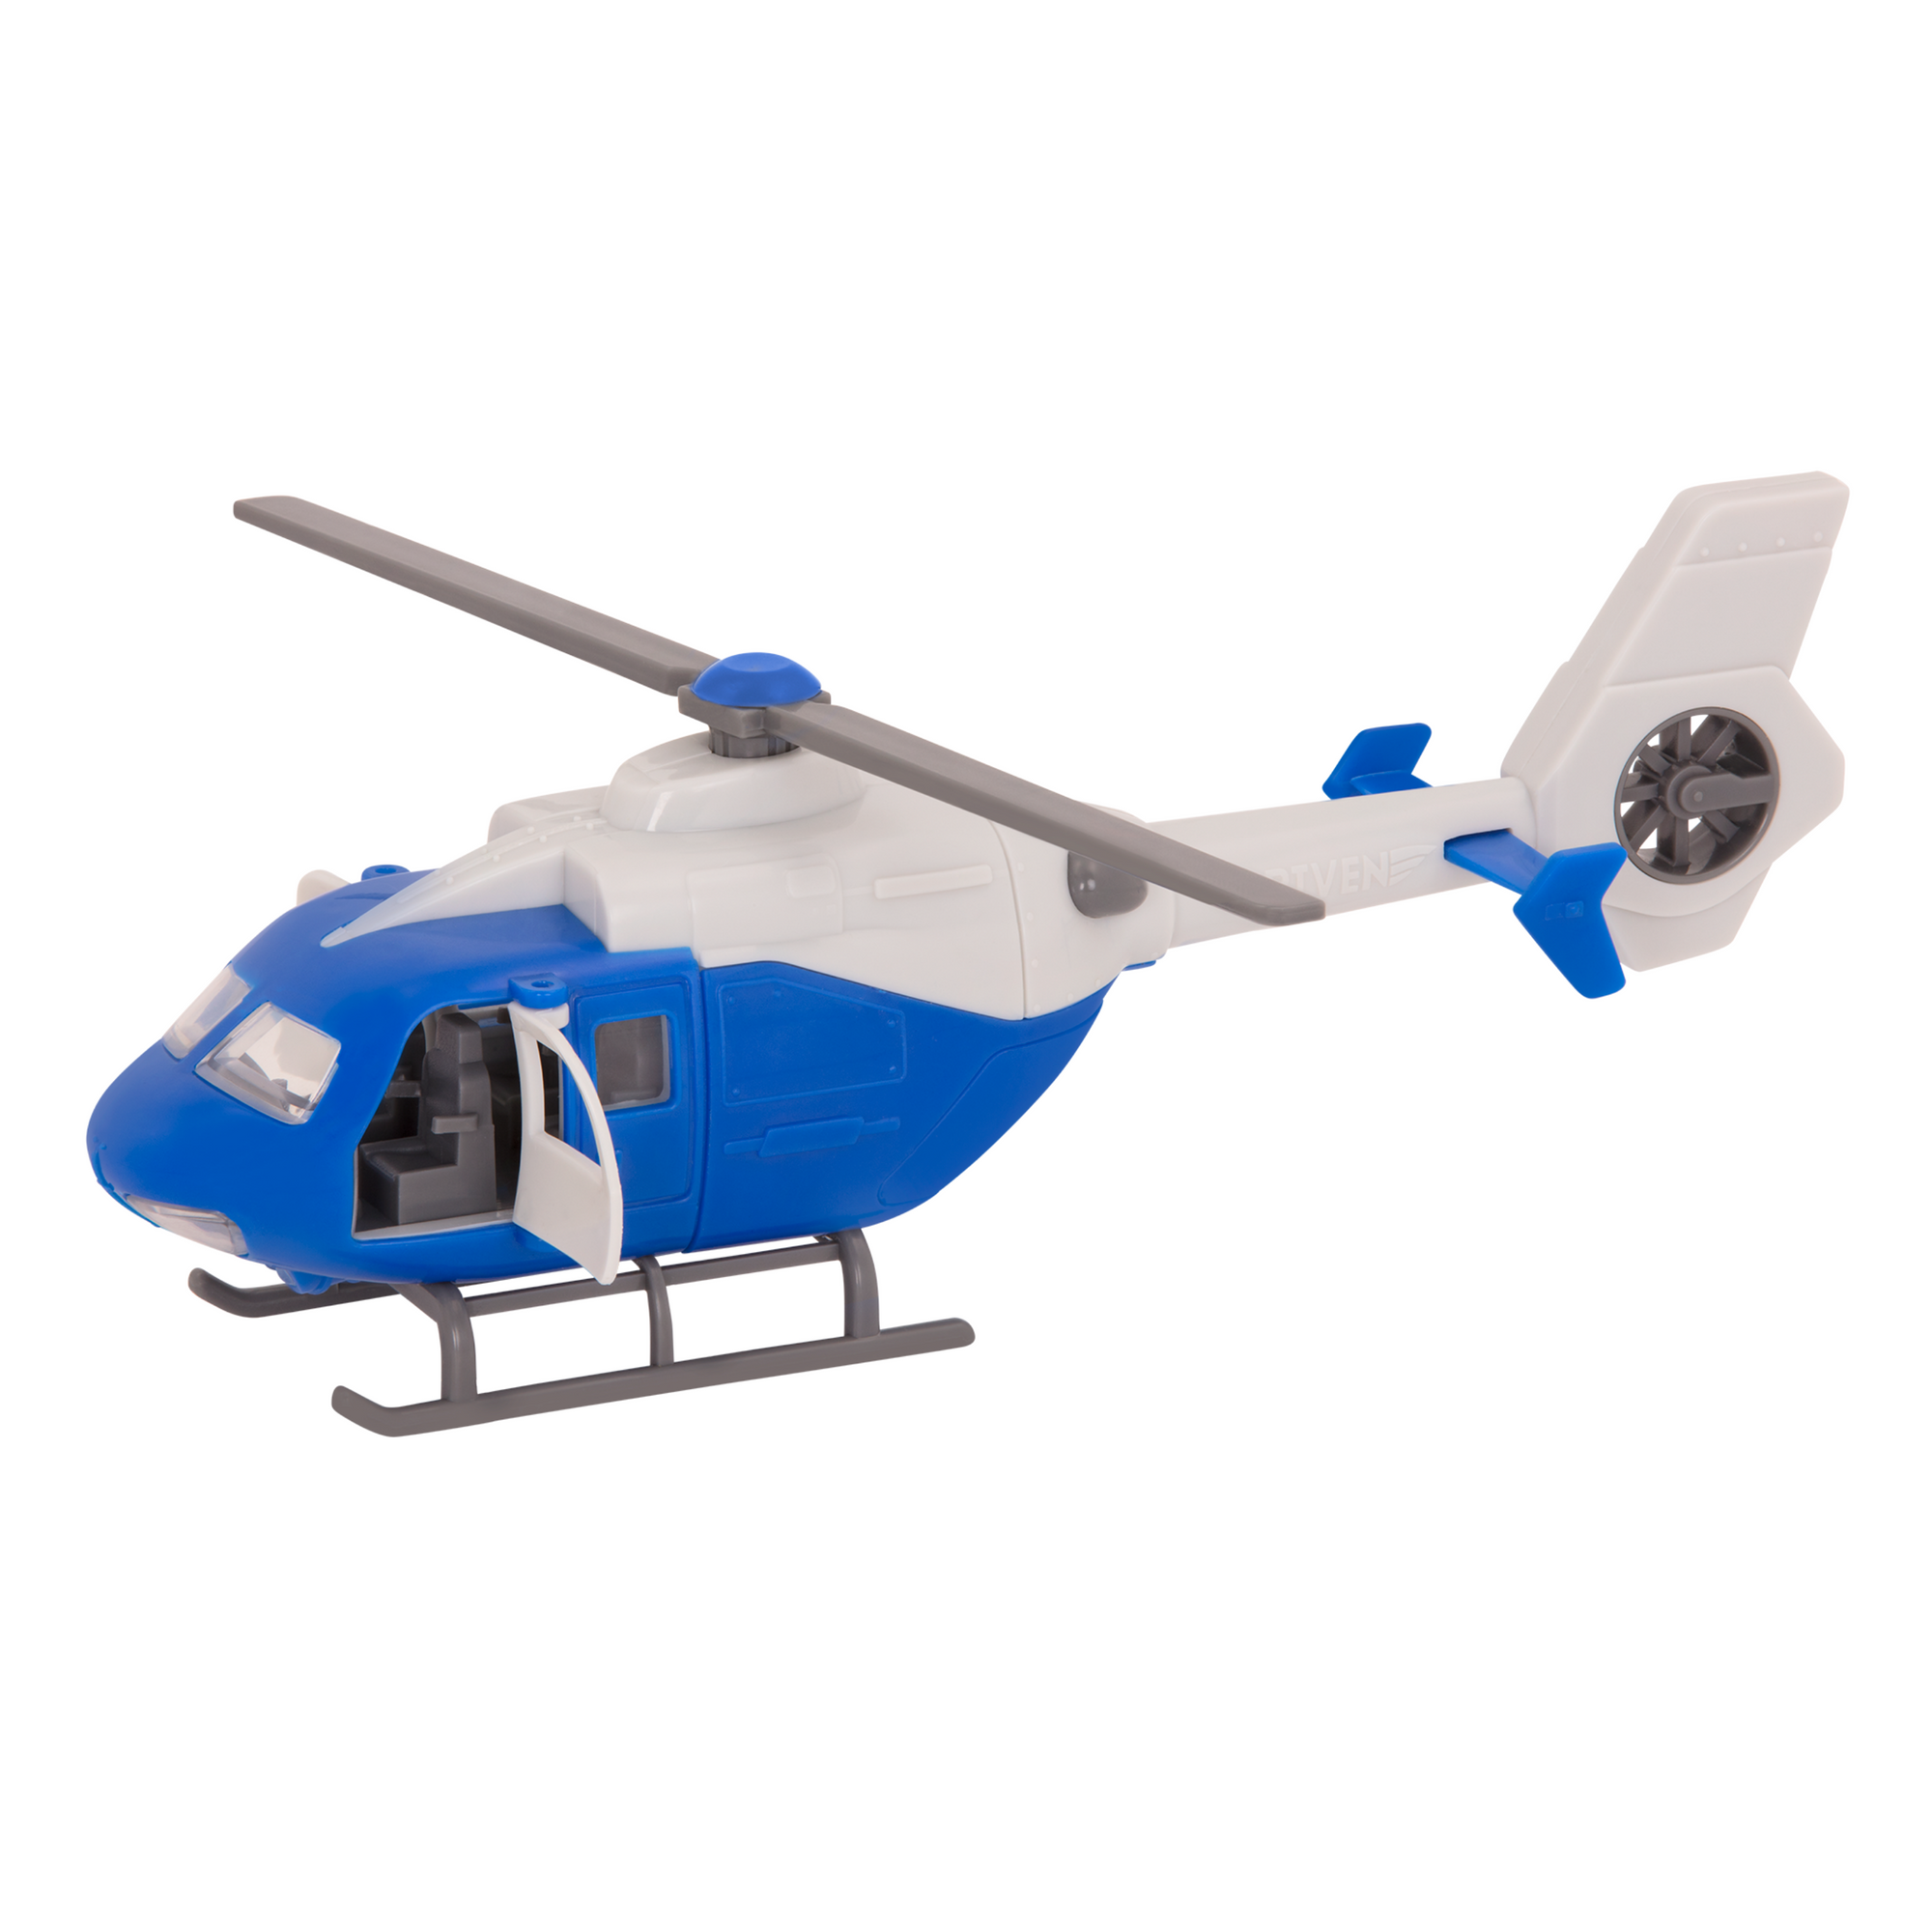 Helicóptero pequeño modelo nuevo